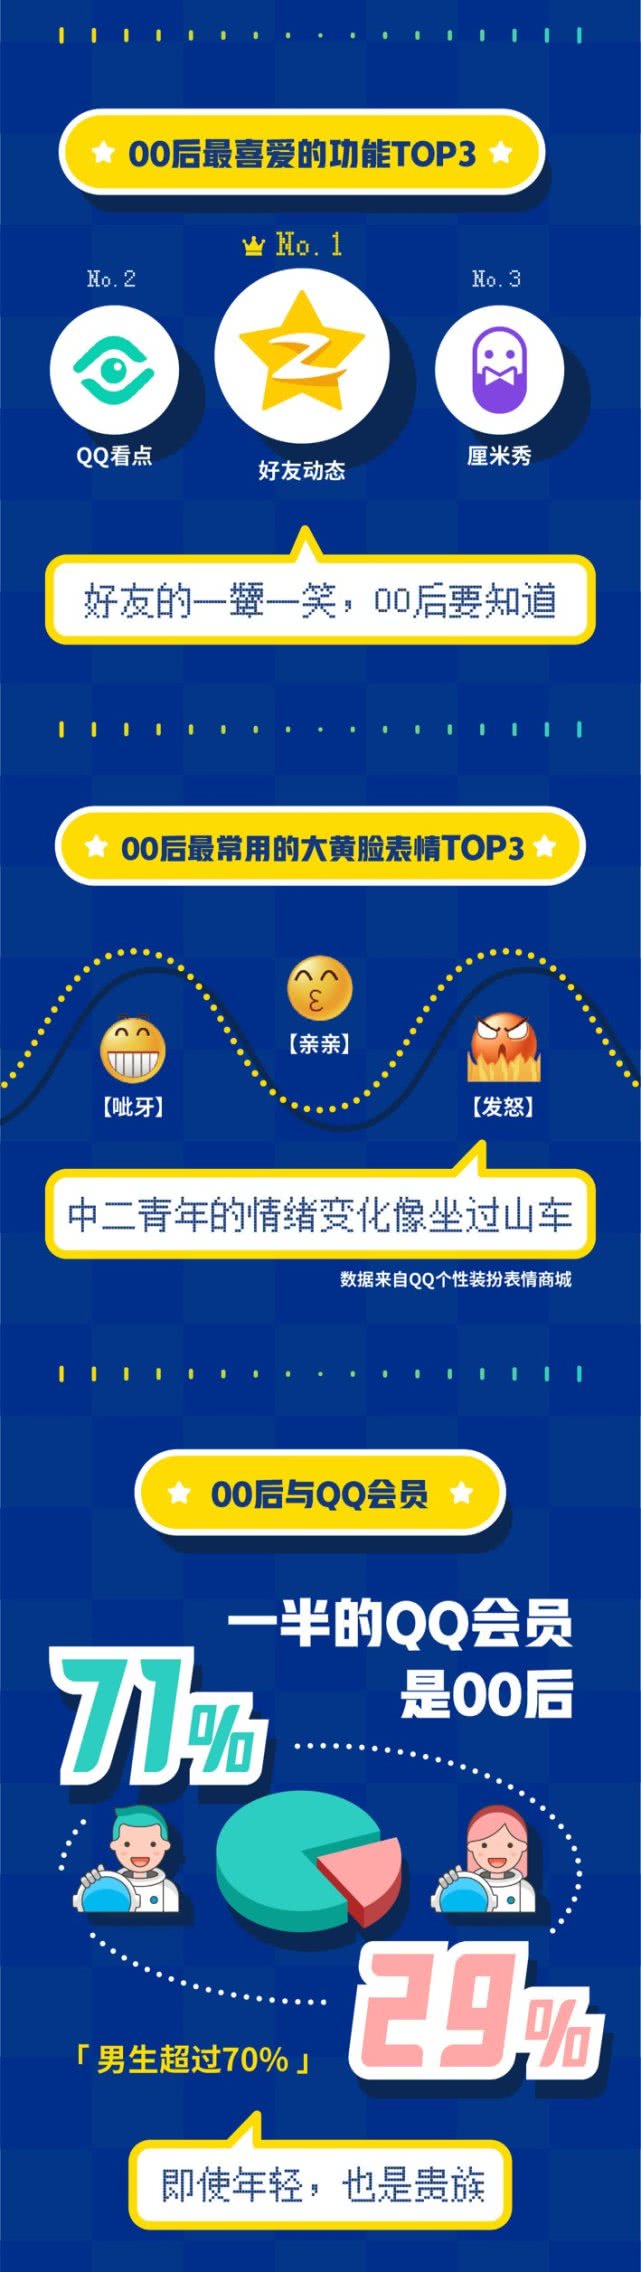 腾讯发布《00后在QQ数据报告》：最常用亲亲、呲牙和发怒表情